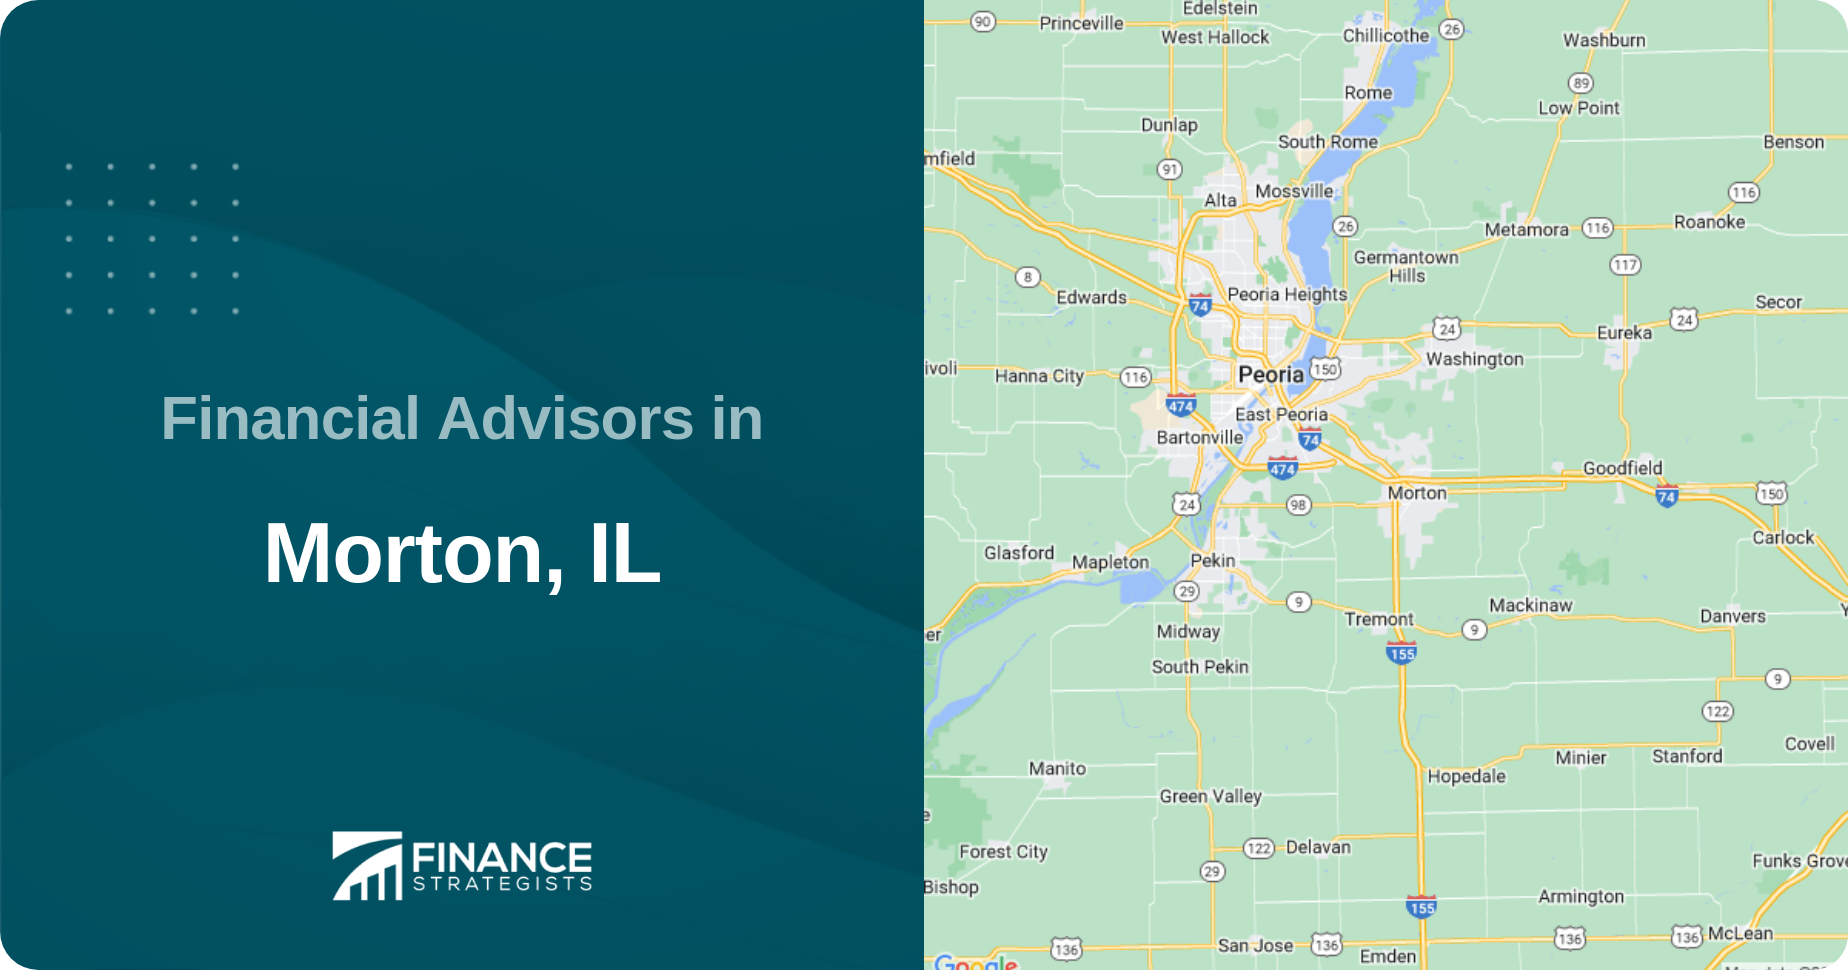 Financial Advisors in Morton, IL